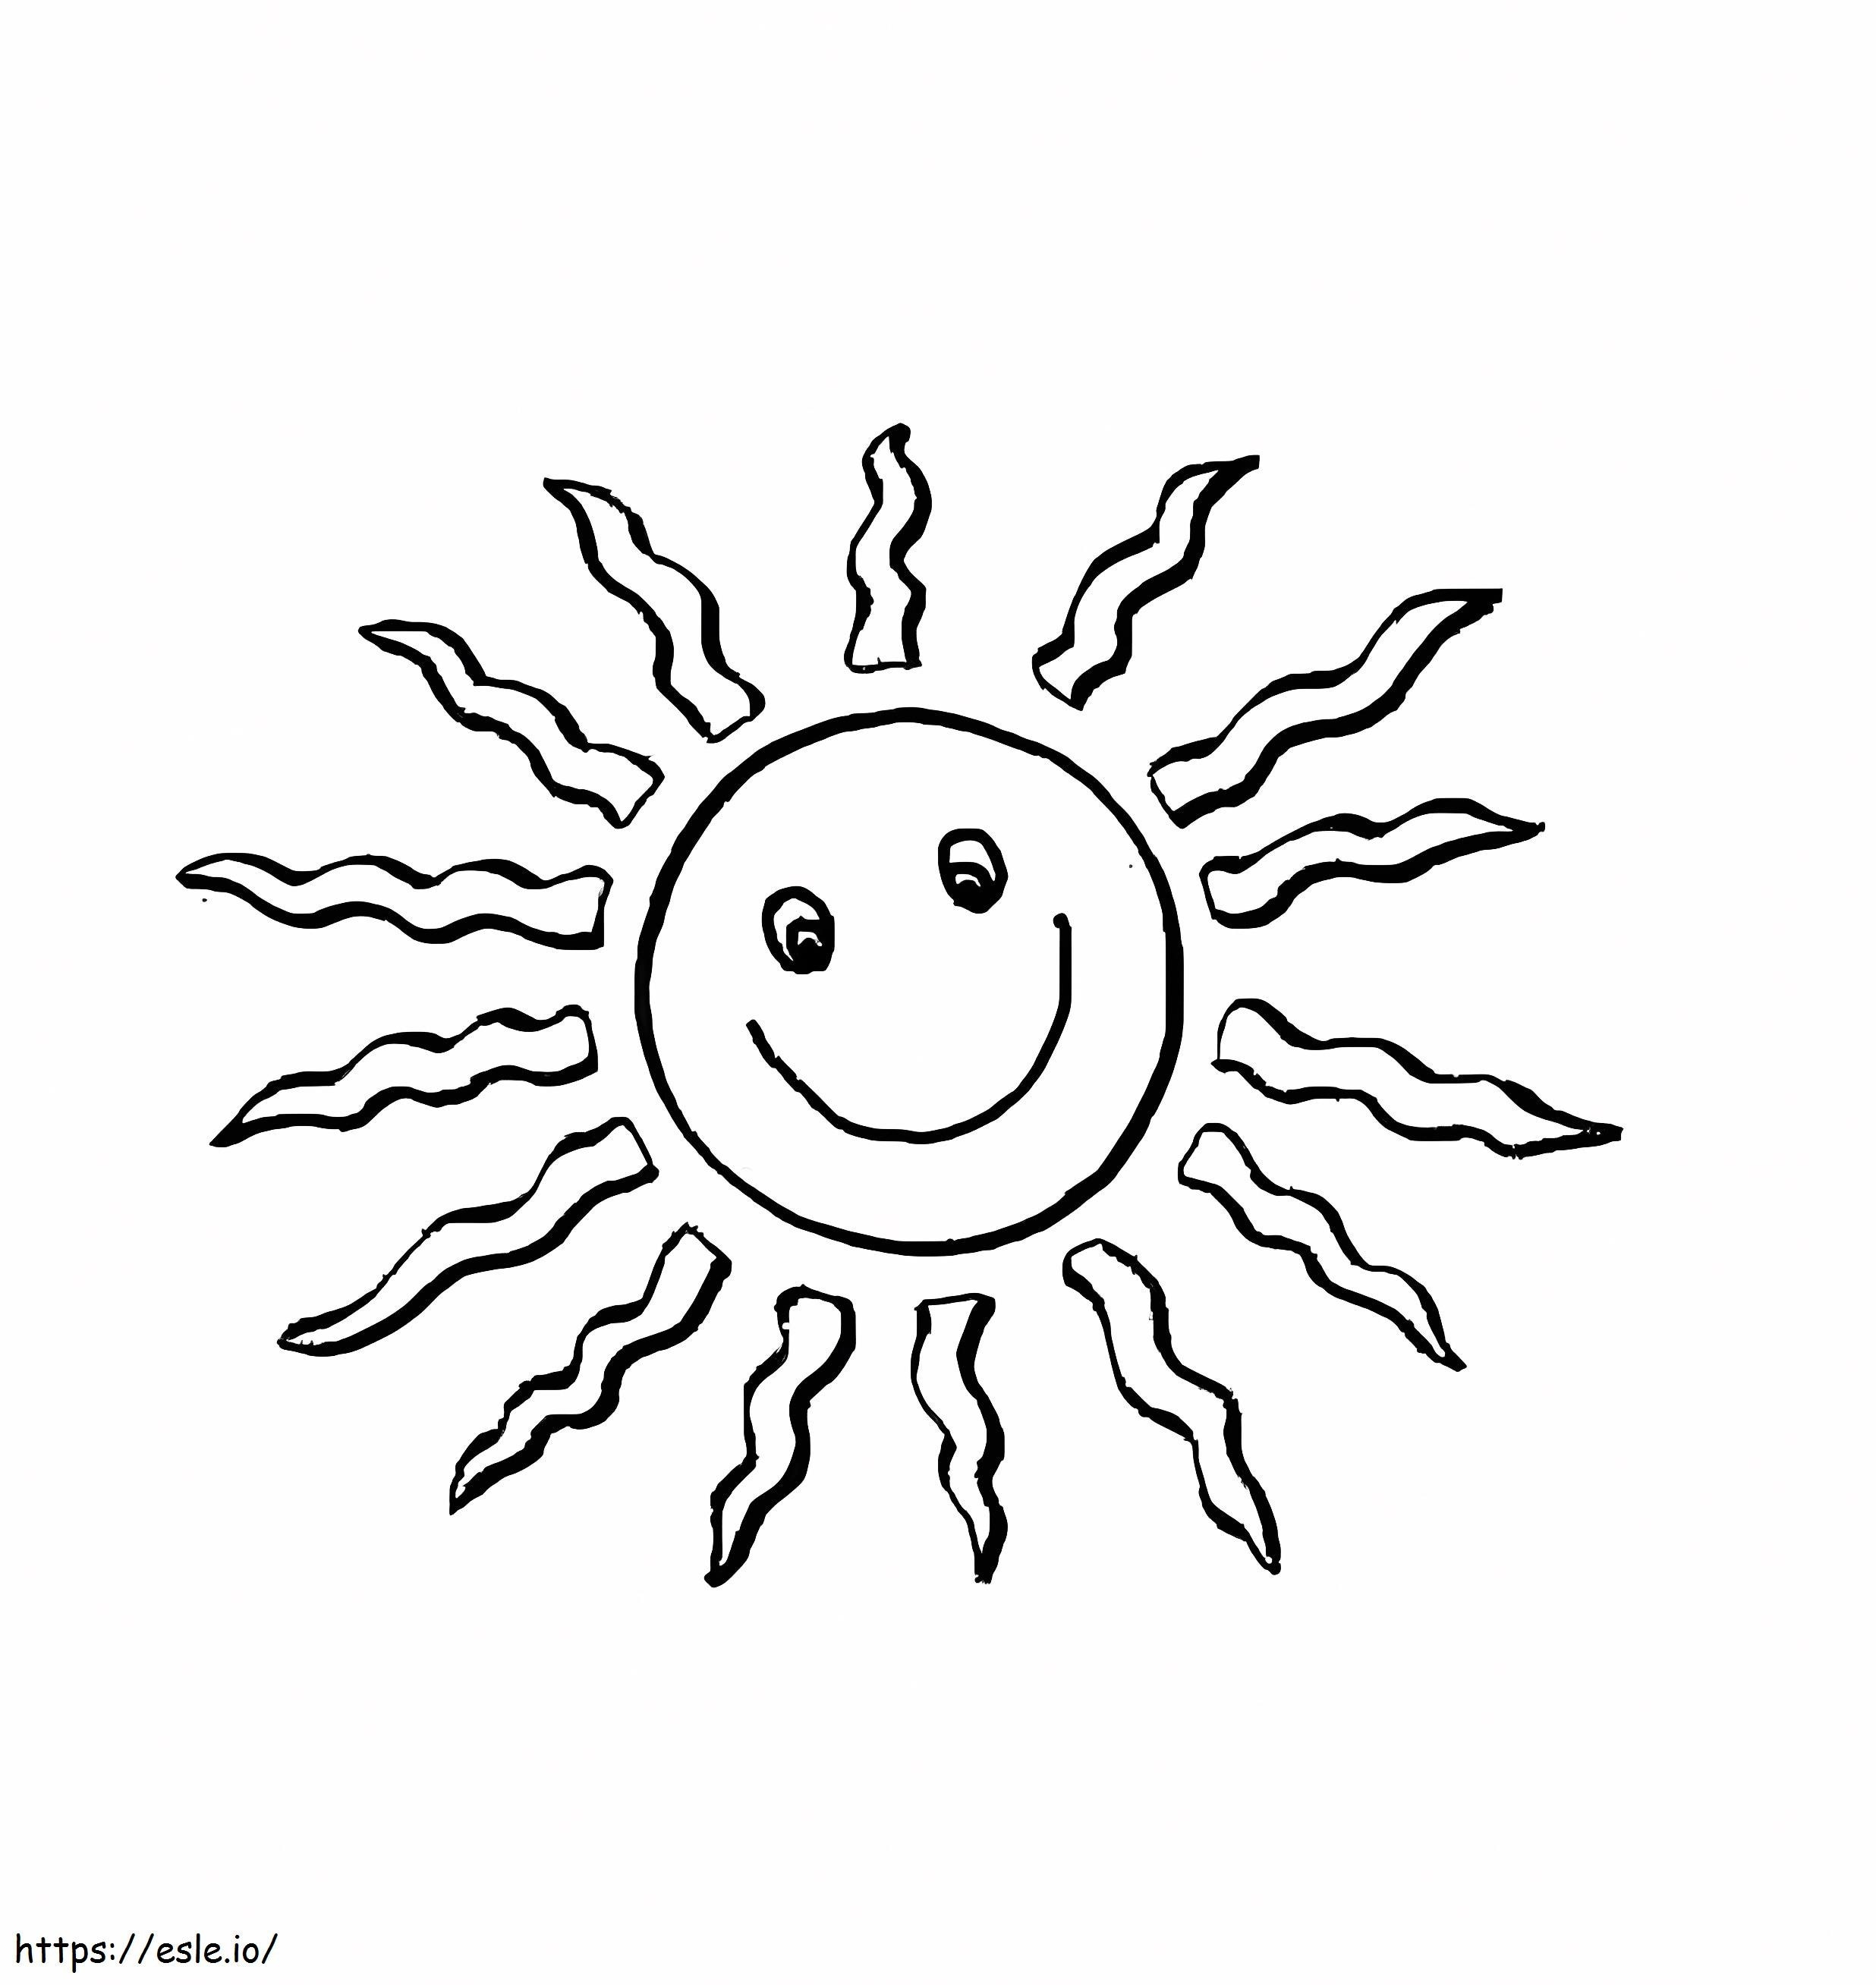 Druckbare Cartoon-Sonne ausmalbilder